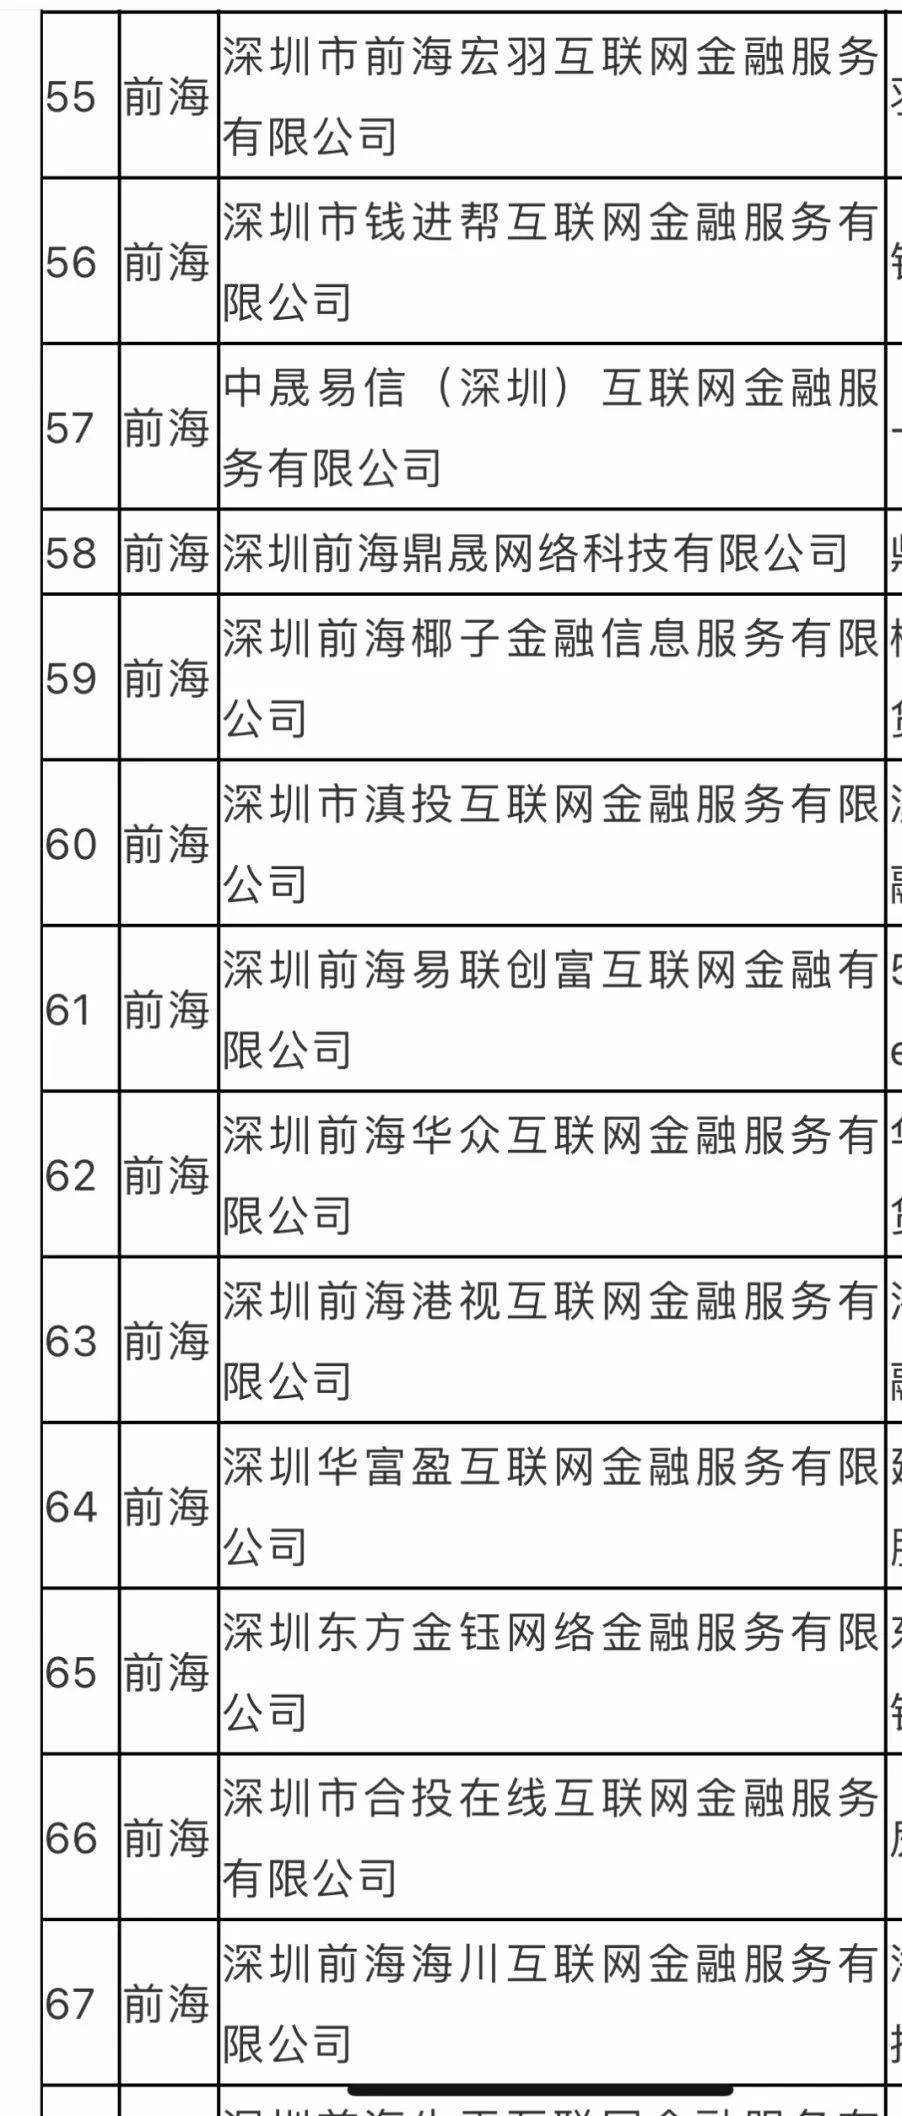 再增6家 深圳合计209家P2P平台自愿退出 全名单